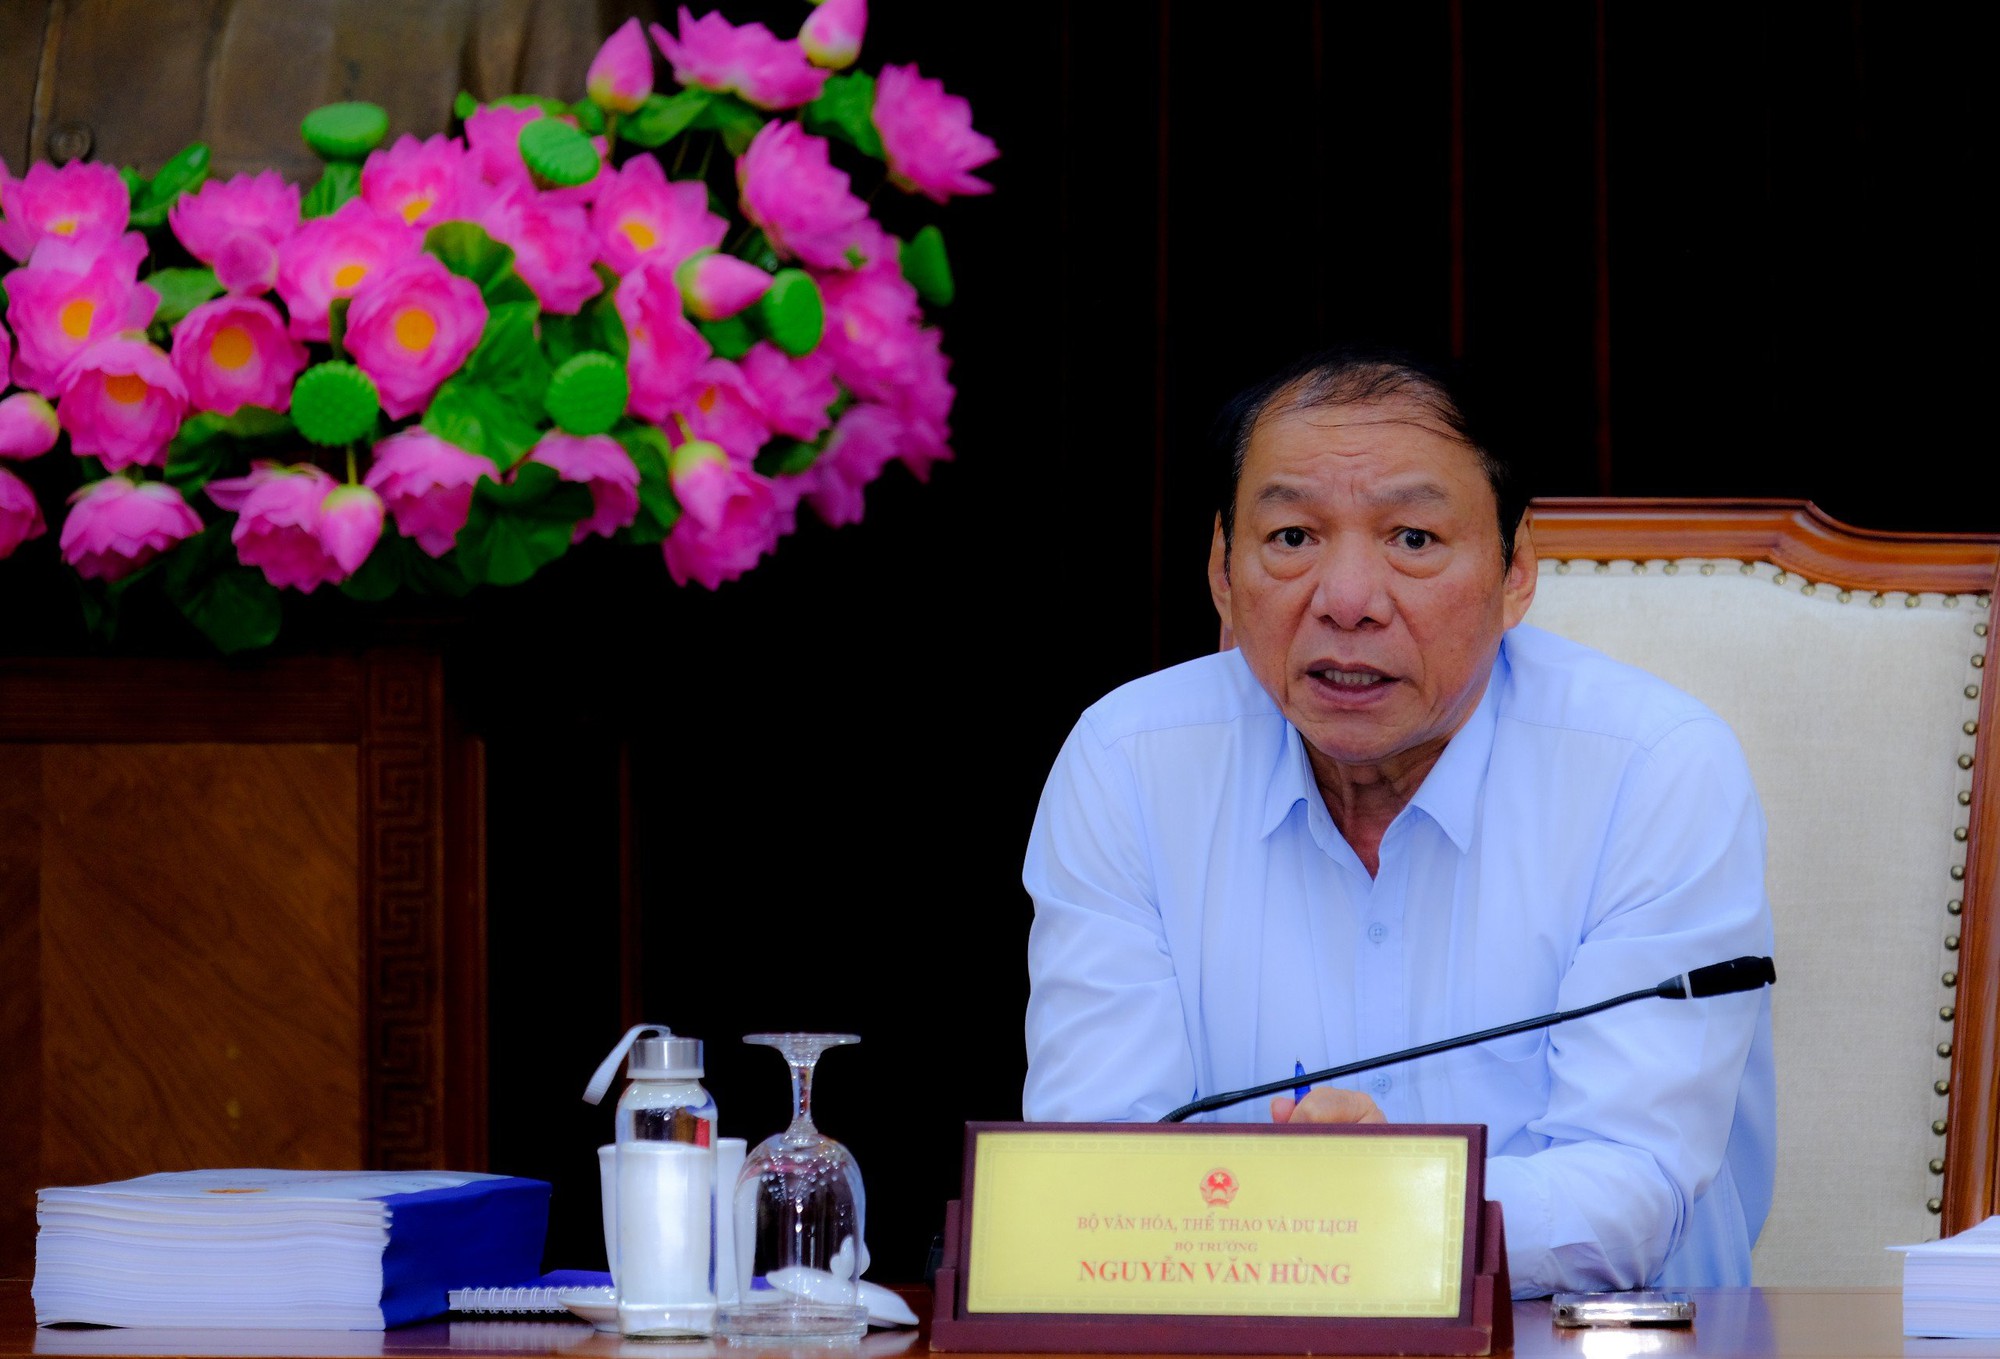 Bộ trưởng Nguyễn Văn Hùng: Chương trình nghệ thuật đặc biệt kỷ niệm 70 năm chiến thắng Điện Biên Phủ phải đảm bảo tính chính trị và nghệ thuật cao - Ảnh 3.